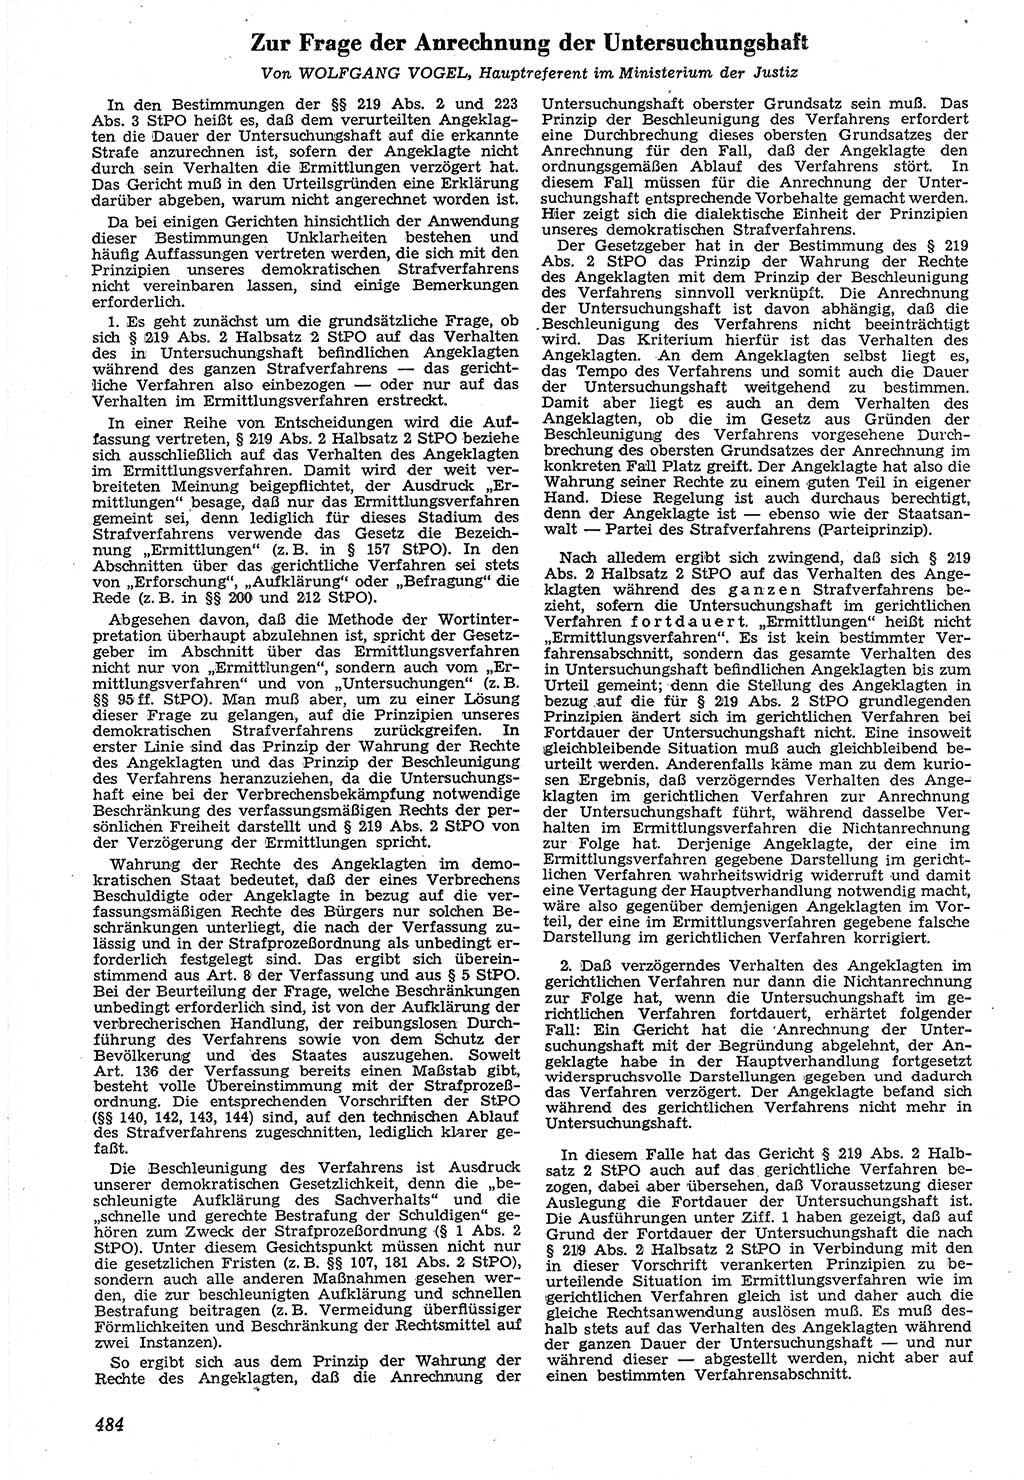 Neue Justiz (NJ), Zeitschrift für Recht und Rechtswissenschaft [Deutsche Demokratische Republik (DDR)], 7. Jahrgang 1953, Seite 484 (NJ DDR 1953, S. 484)